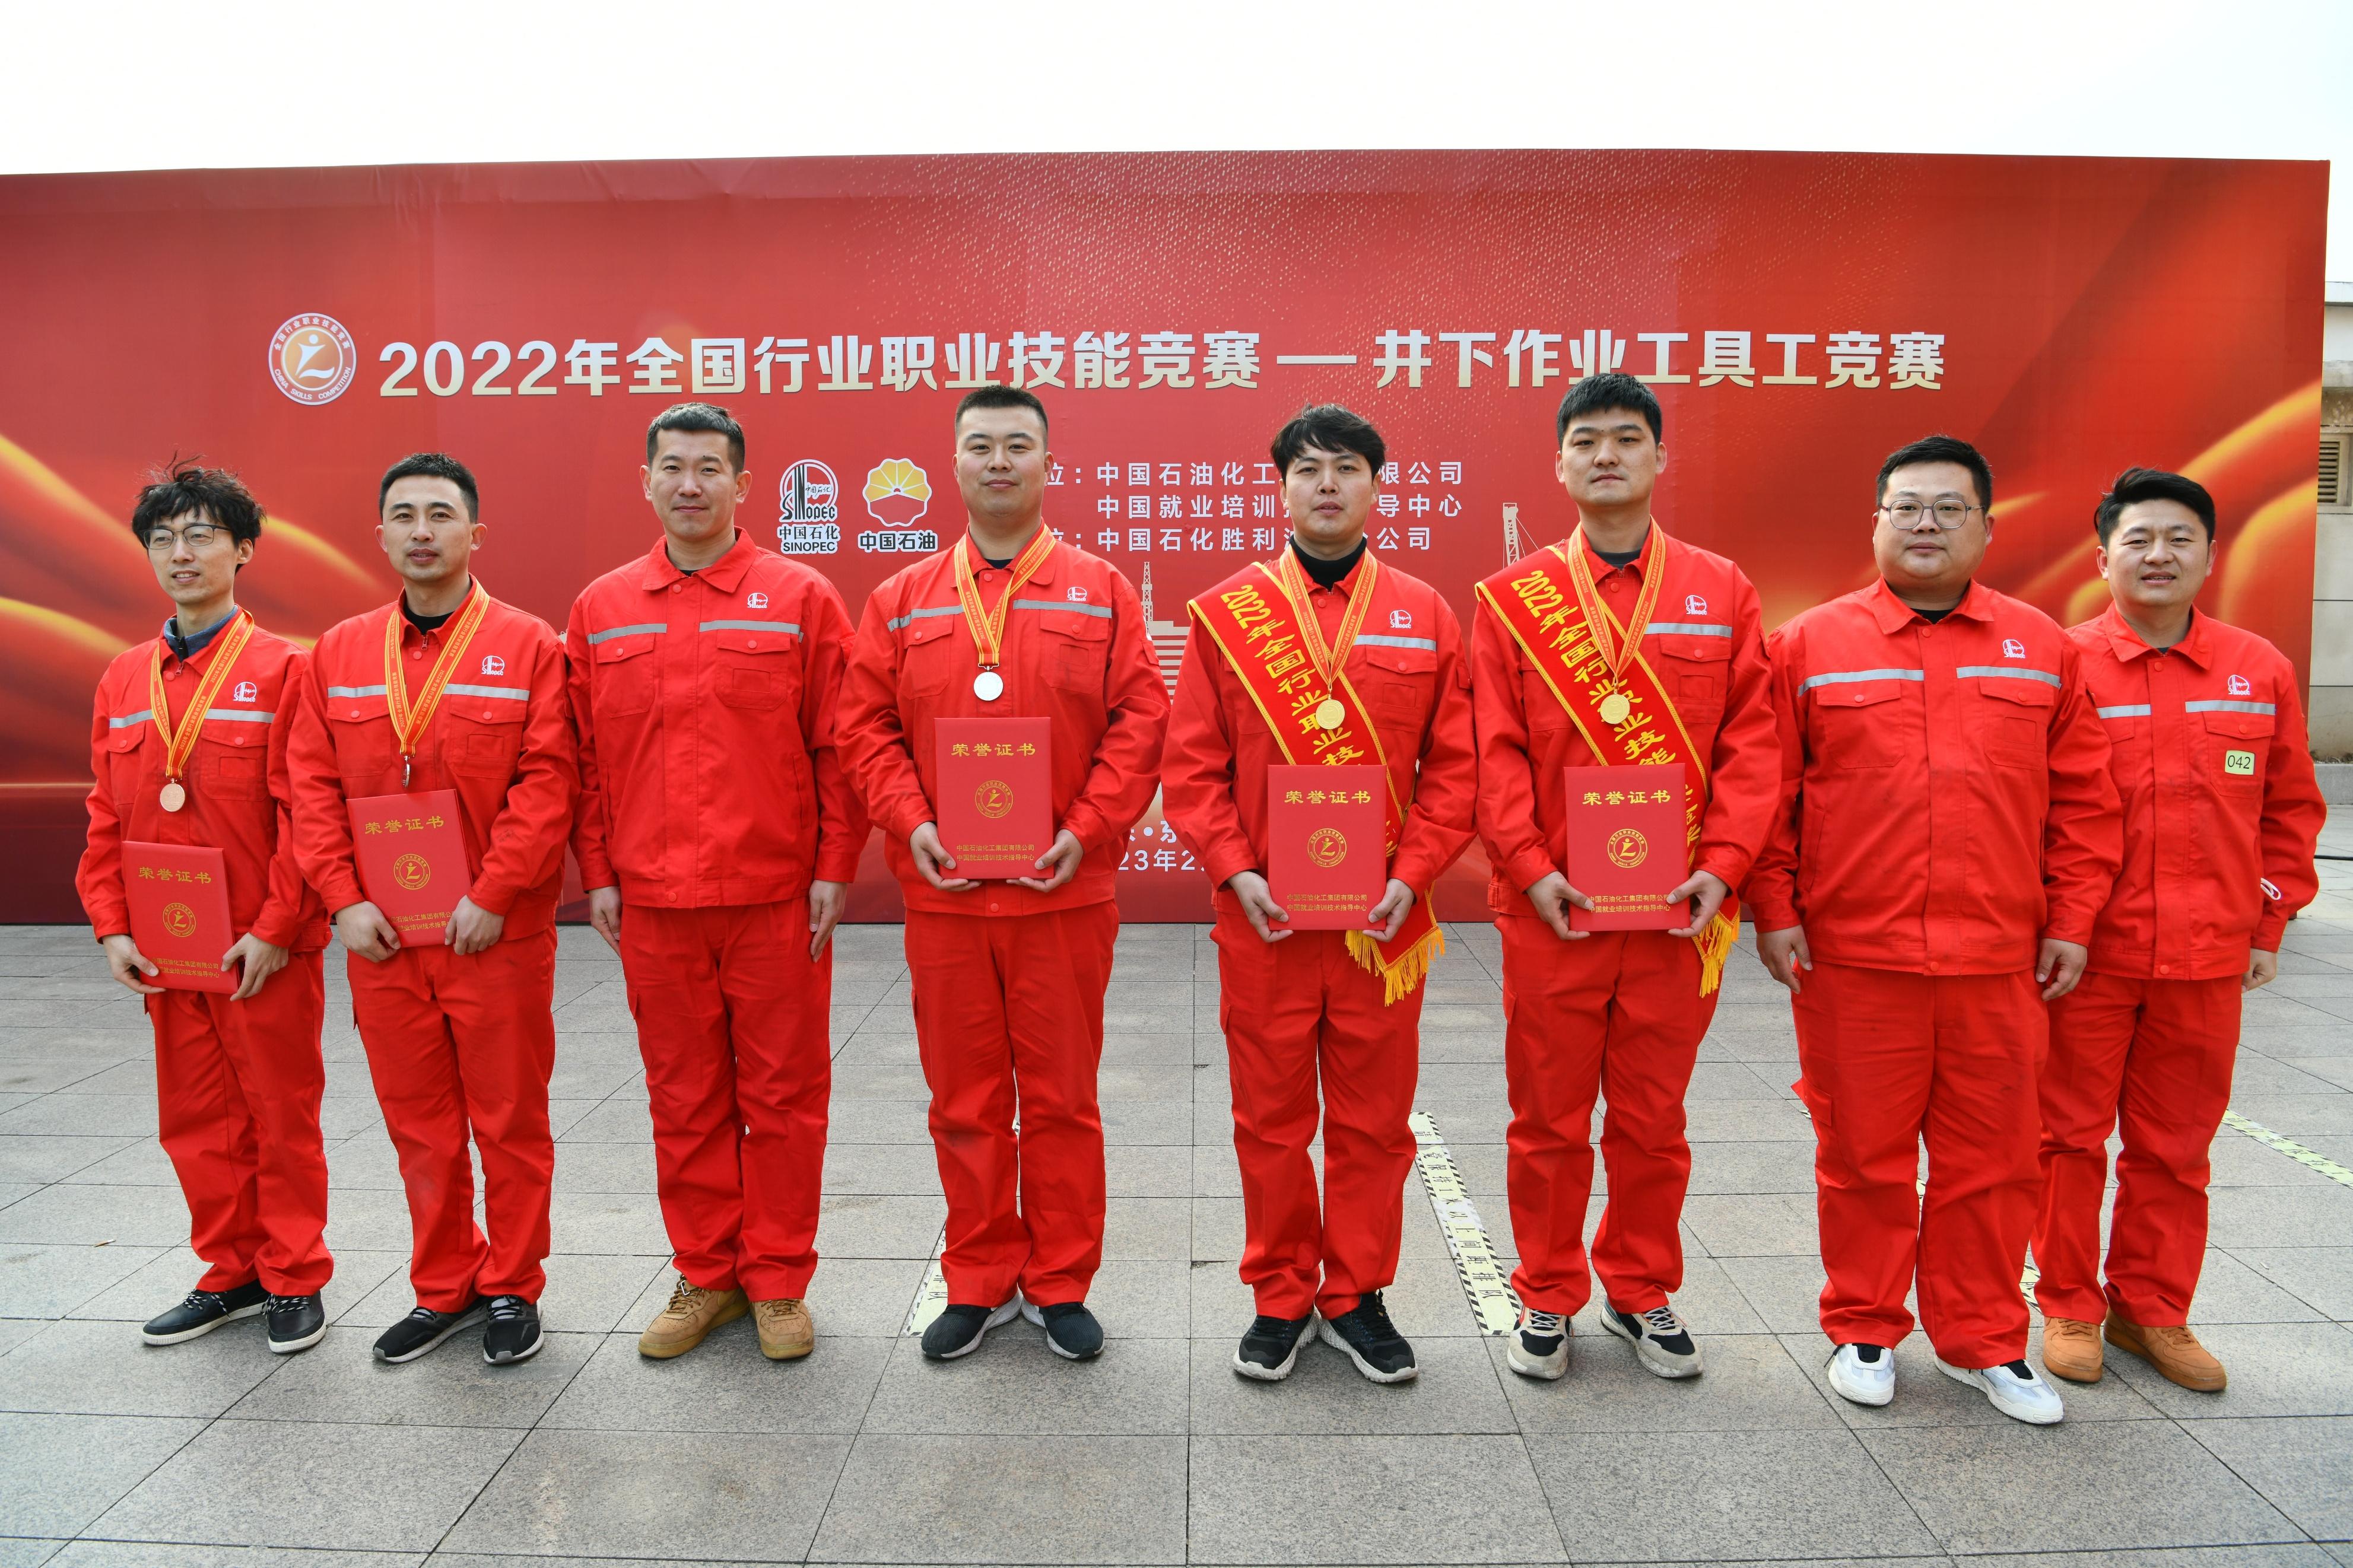 中国石化胜利油田油气井下作业中心打造高素质技能人才队伍